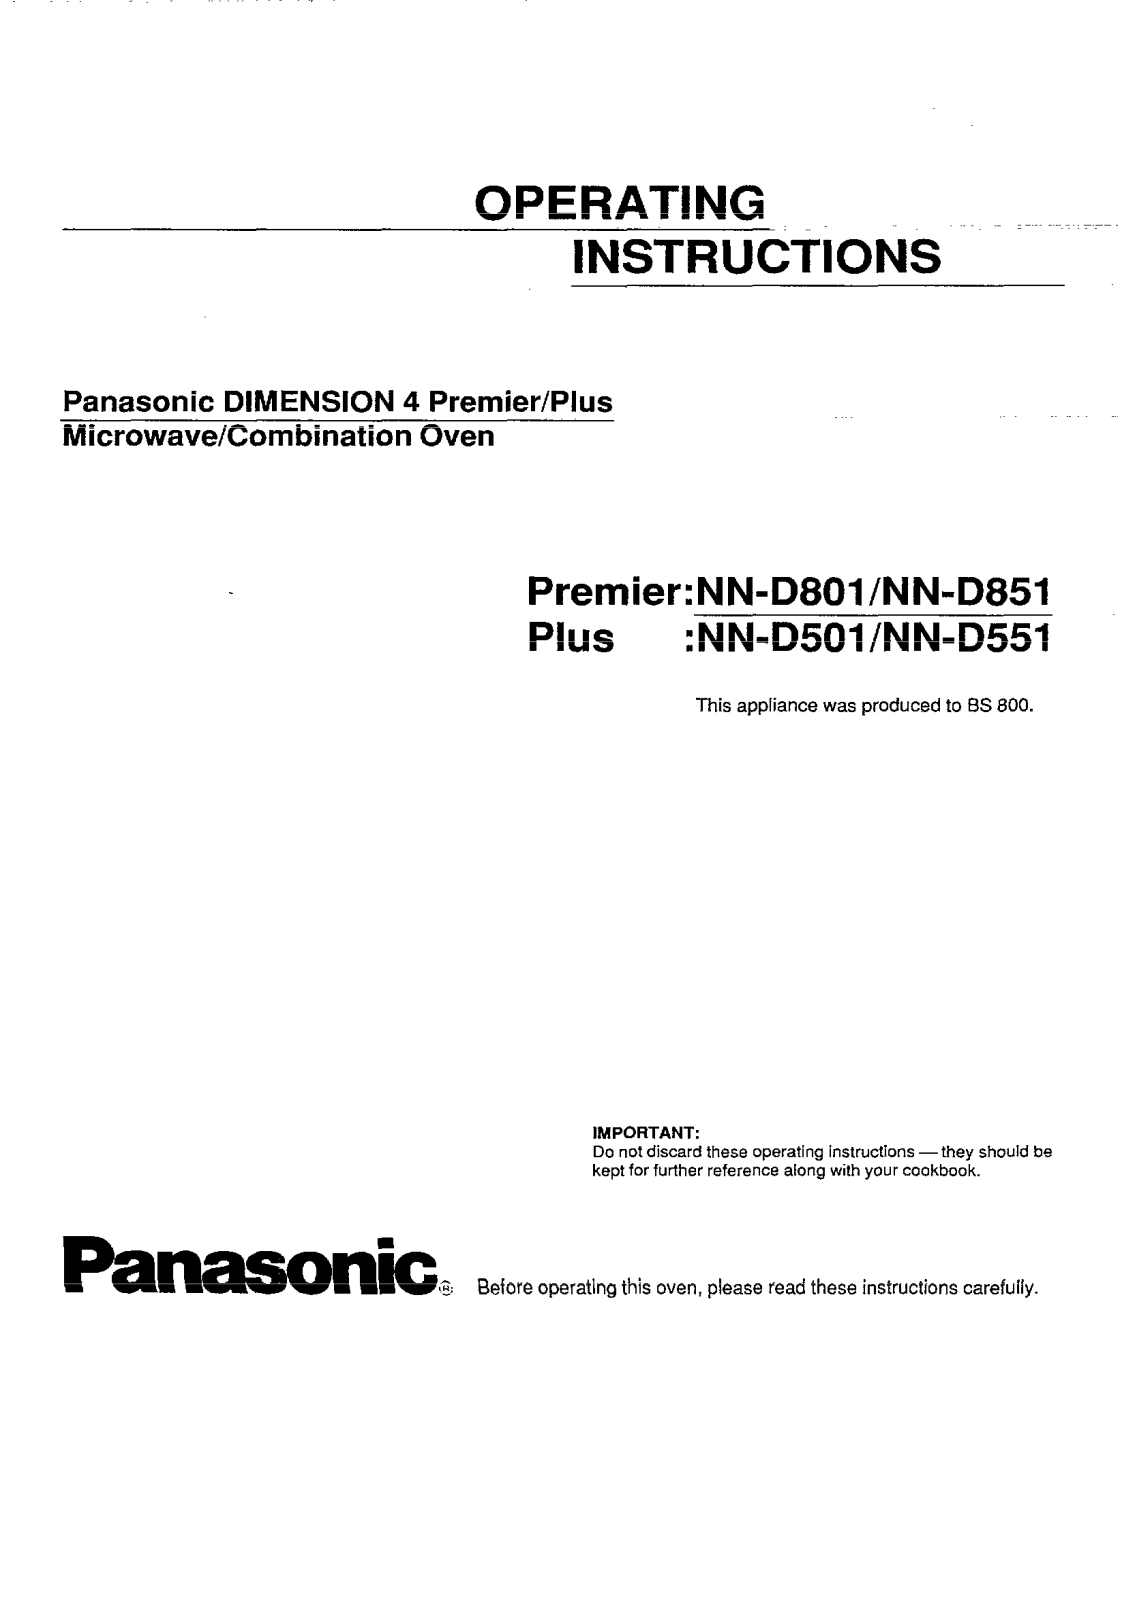 Panasonic NN-D801, NN-D551, NN-D501, NN-D851 User Manual